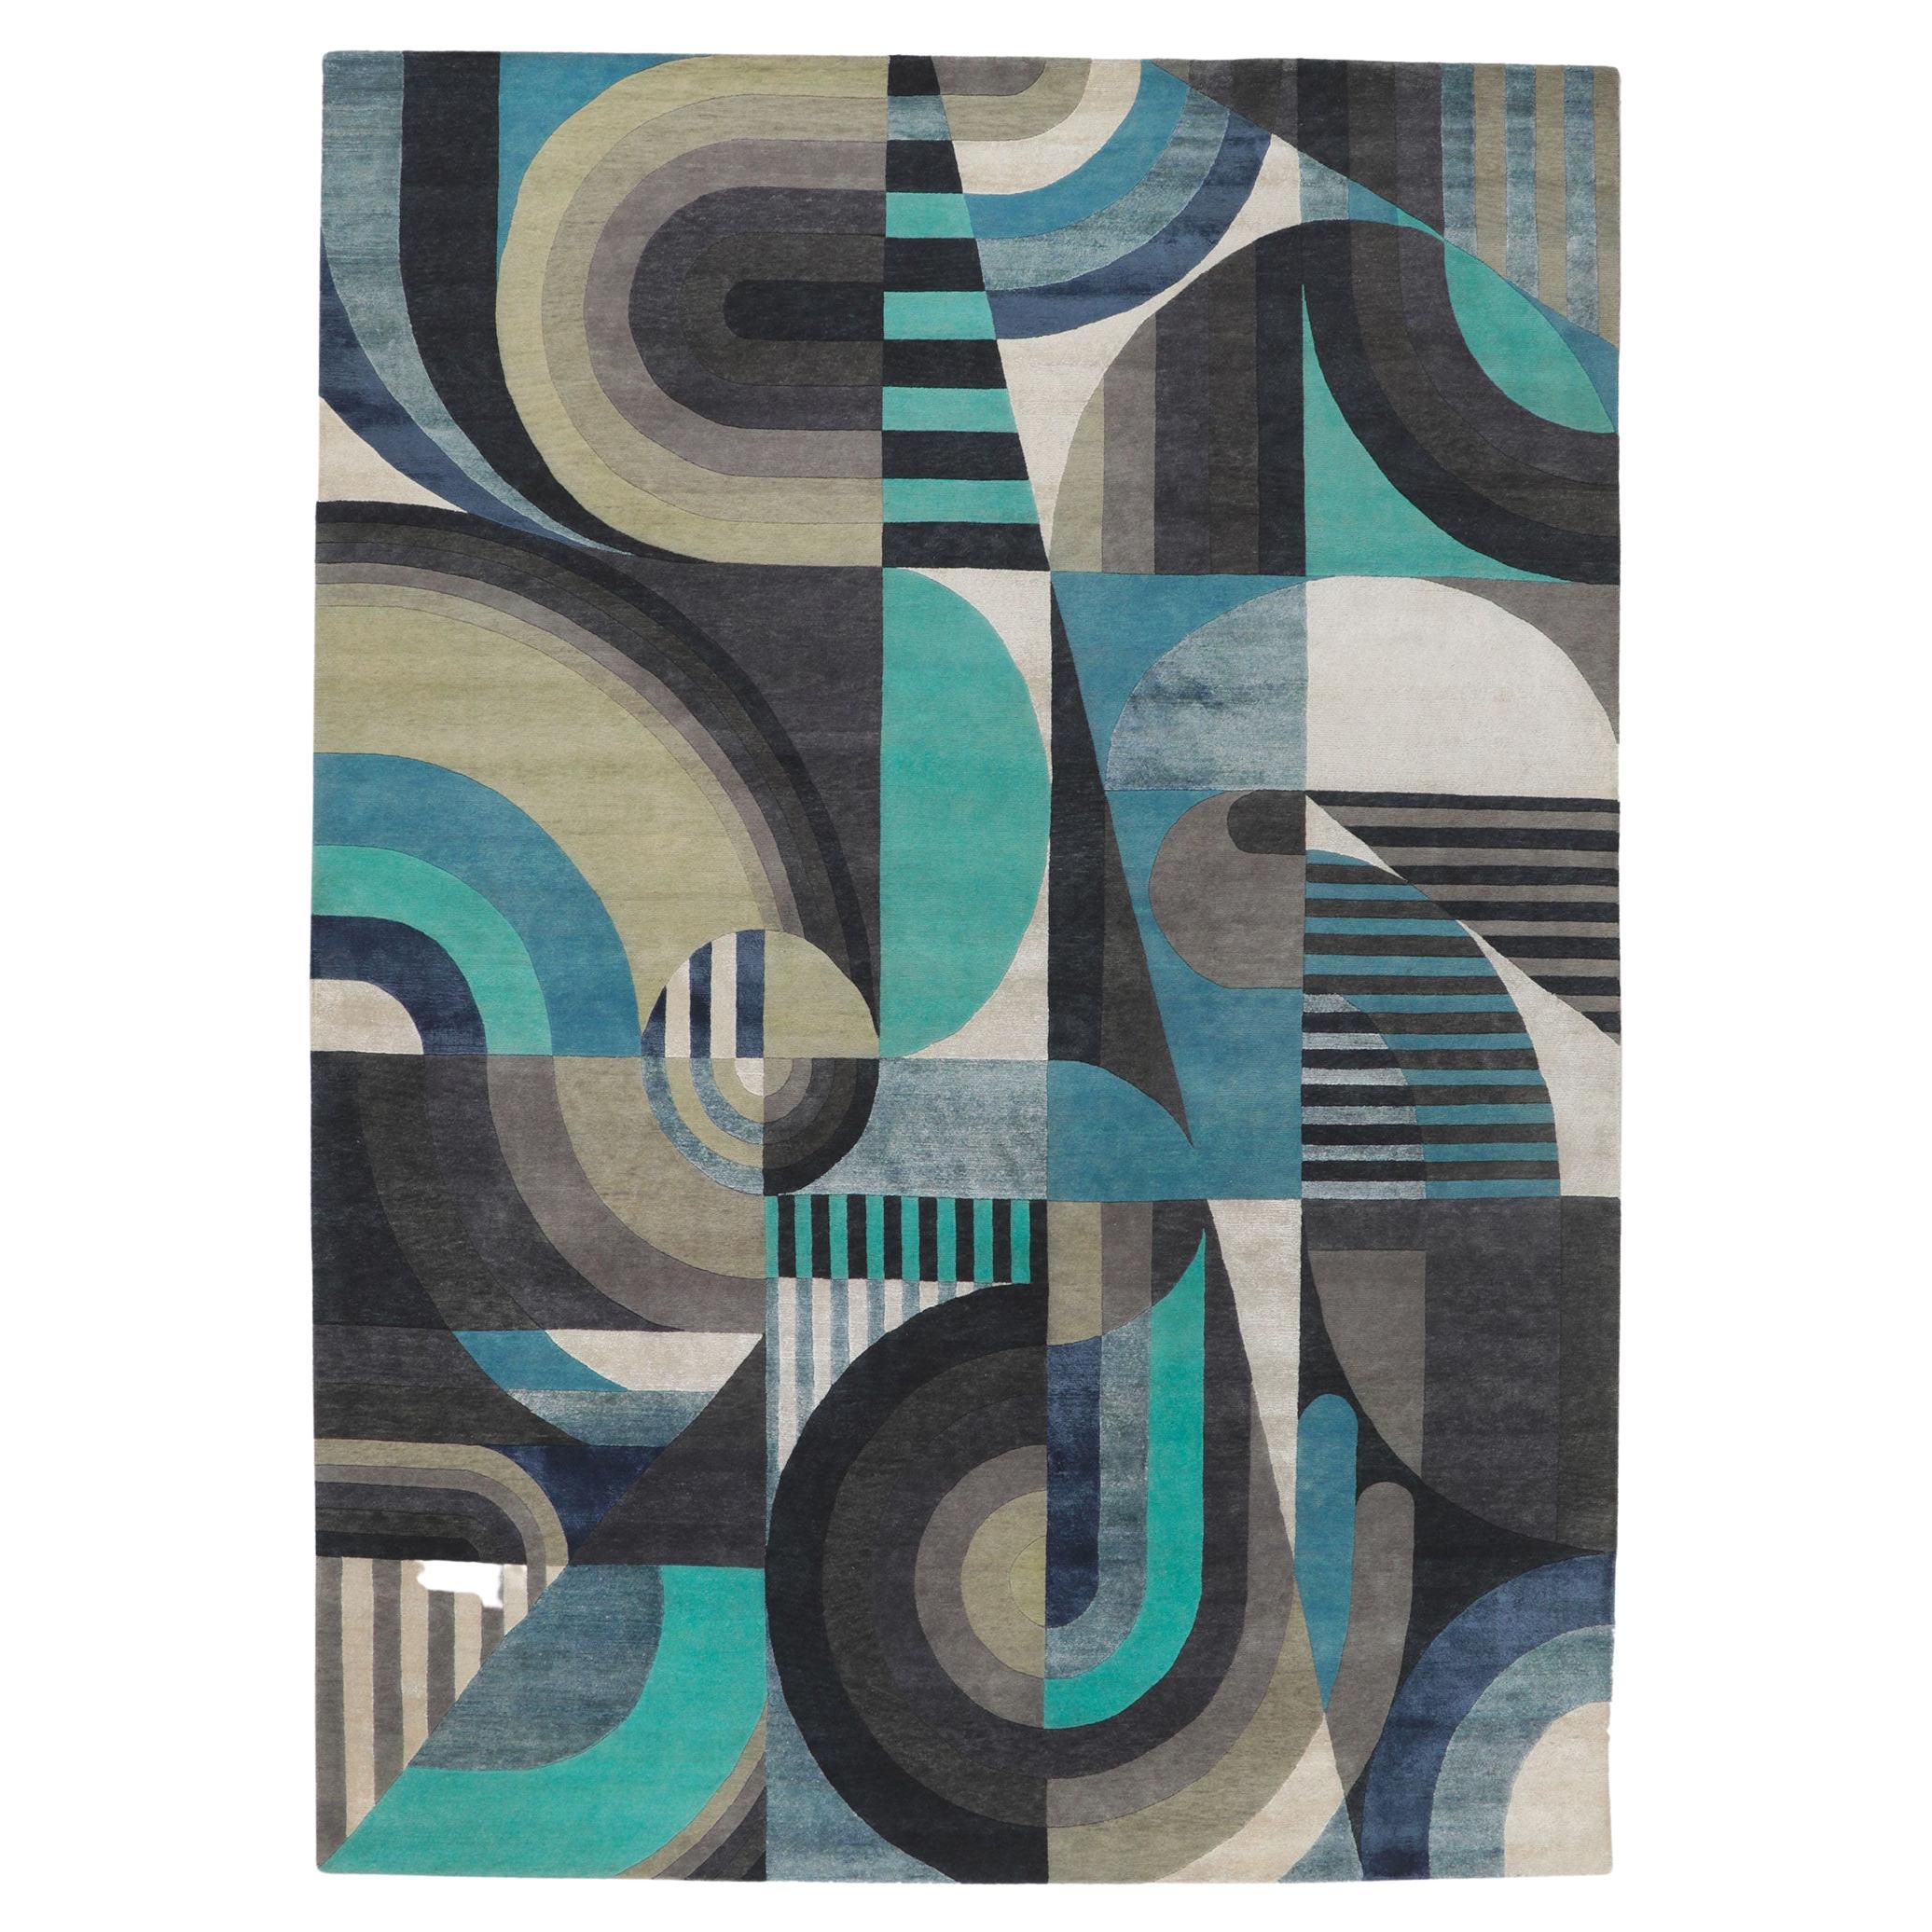 Zeitgenössischer abstrakter Teppich mit Orphismus-Stil, inspiriert von Sonia Delaunay